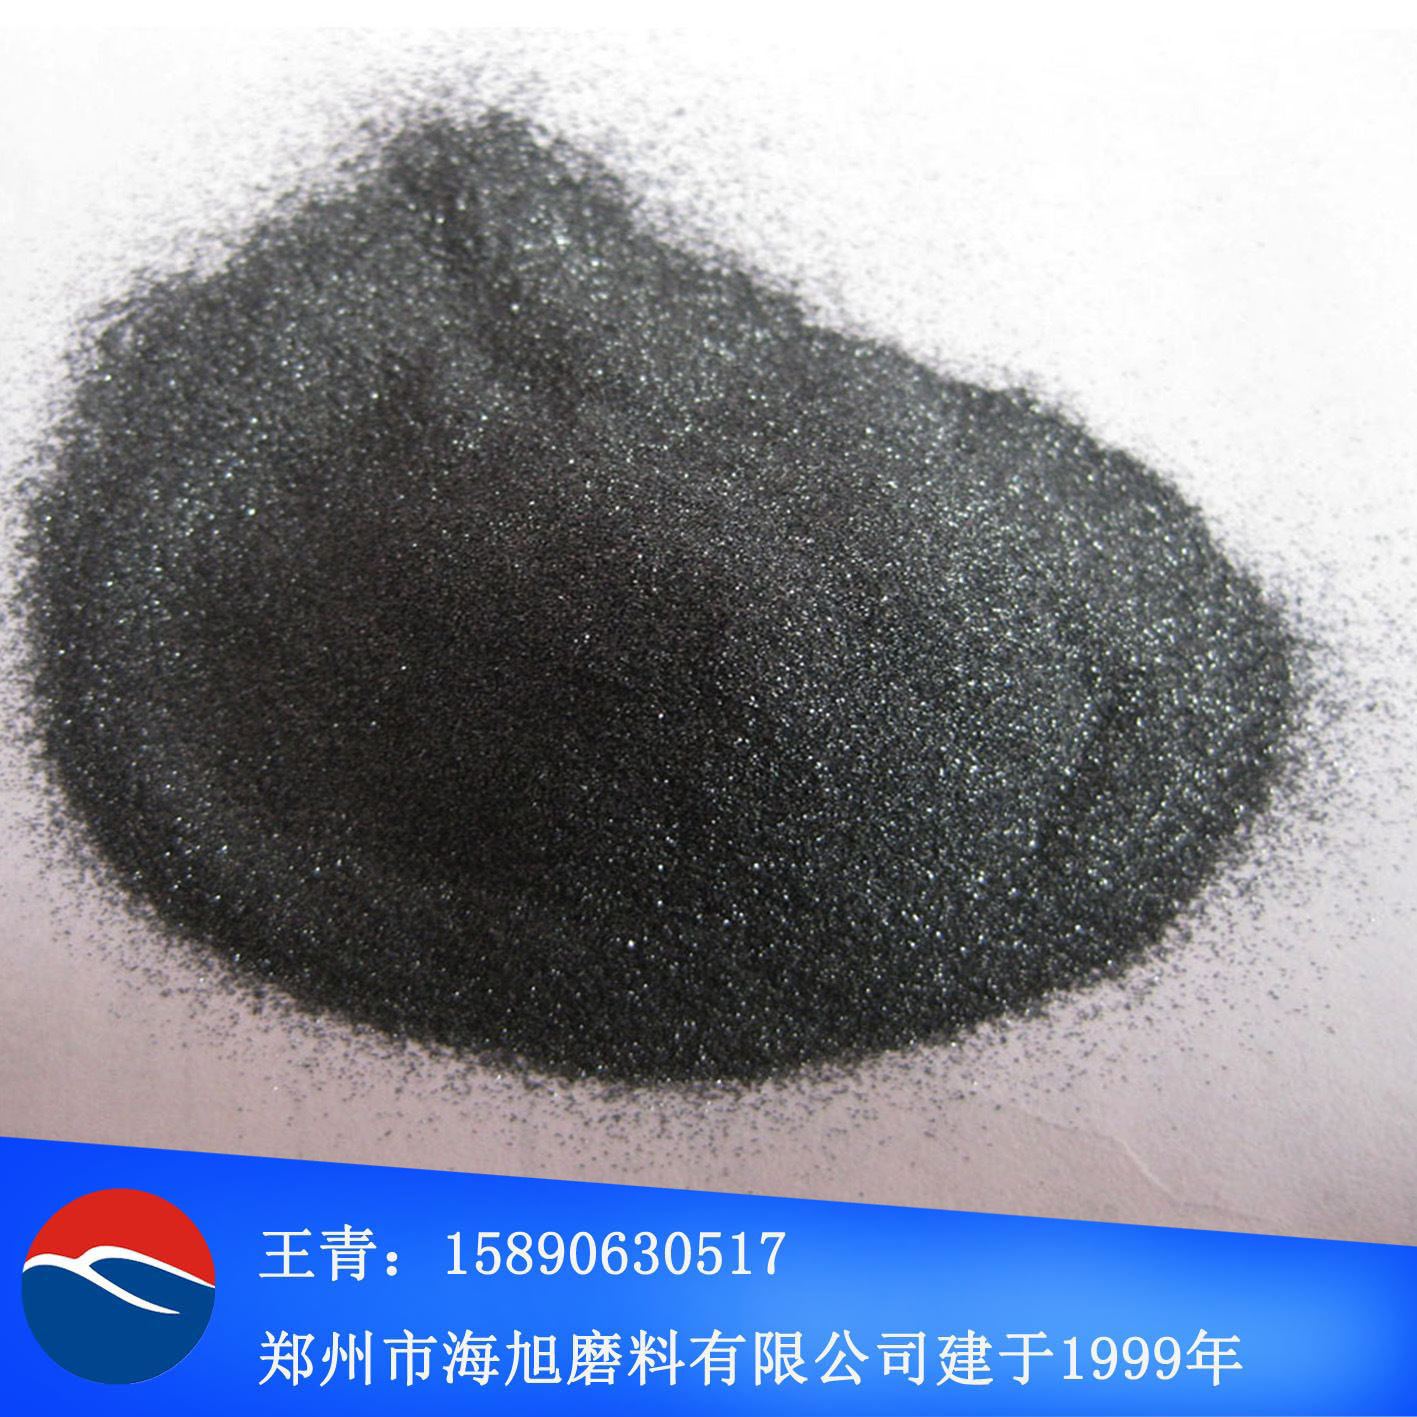 喷砂用粒度砂F150#黑碳化硅 黑色金刚砂F150#黑碳化硅价格优惠